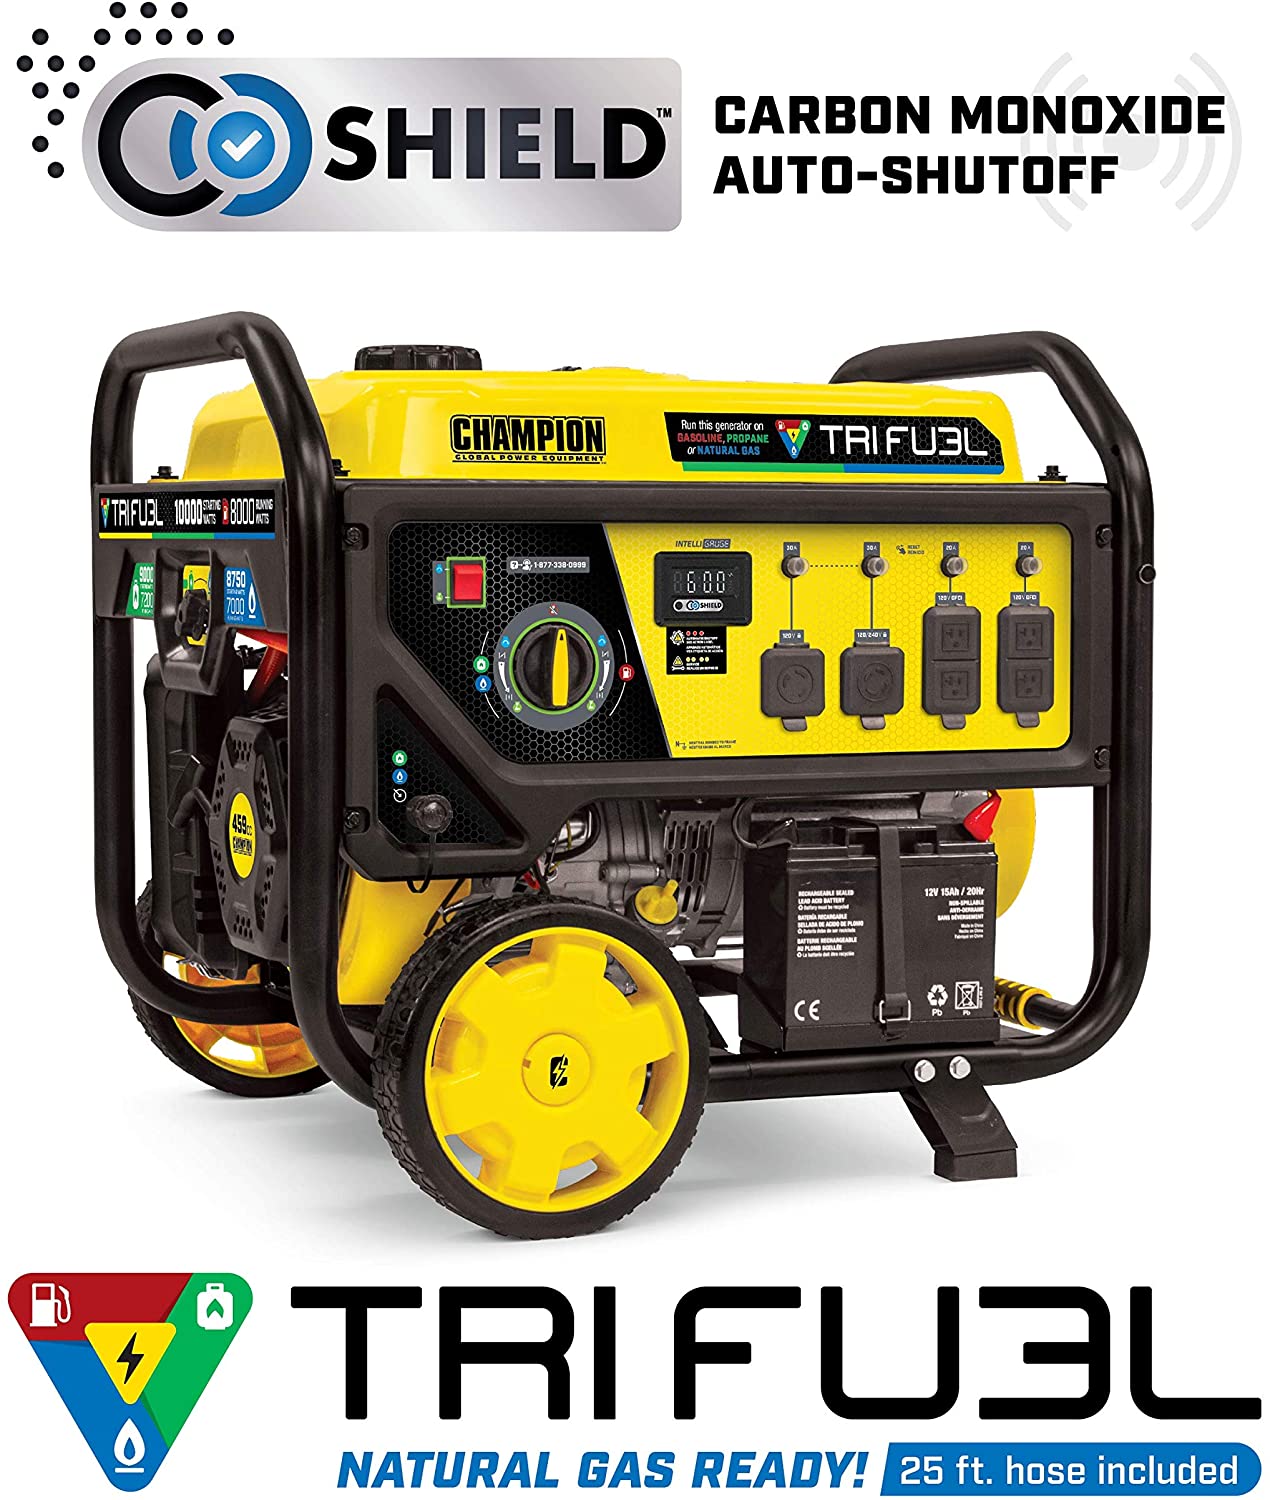 Champion 8000W/10000W Tri Fuel Portable Generator w/ CO Shield